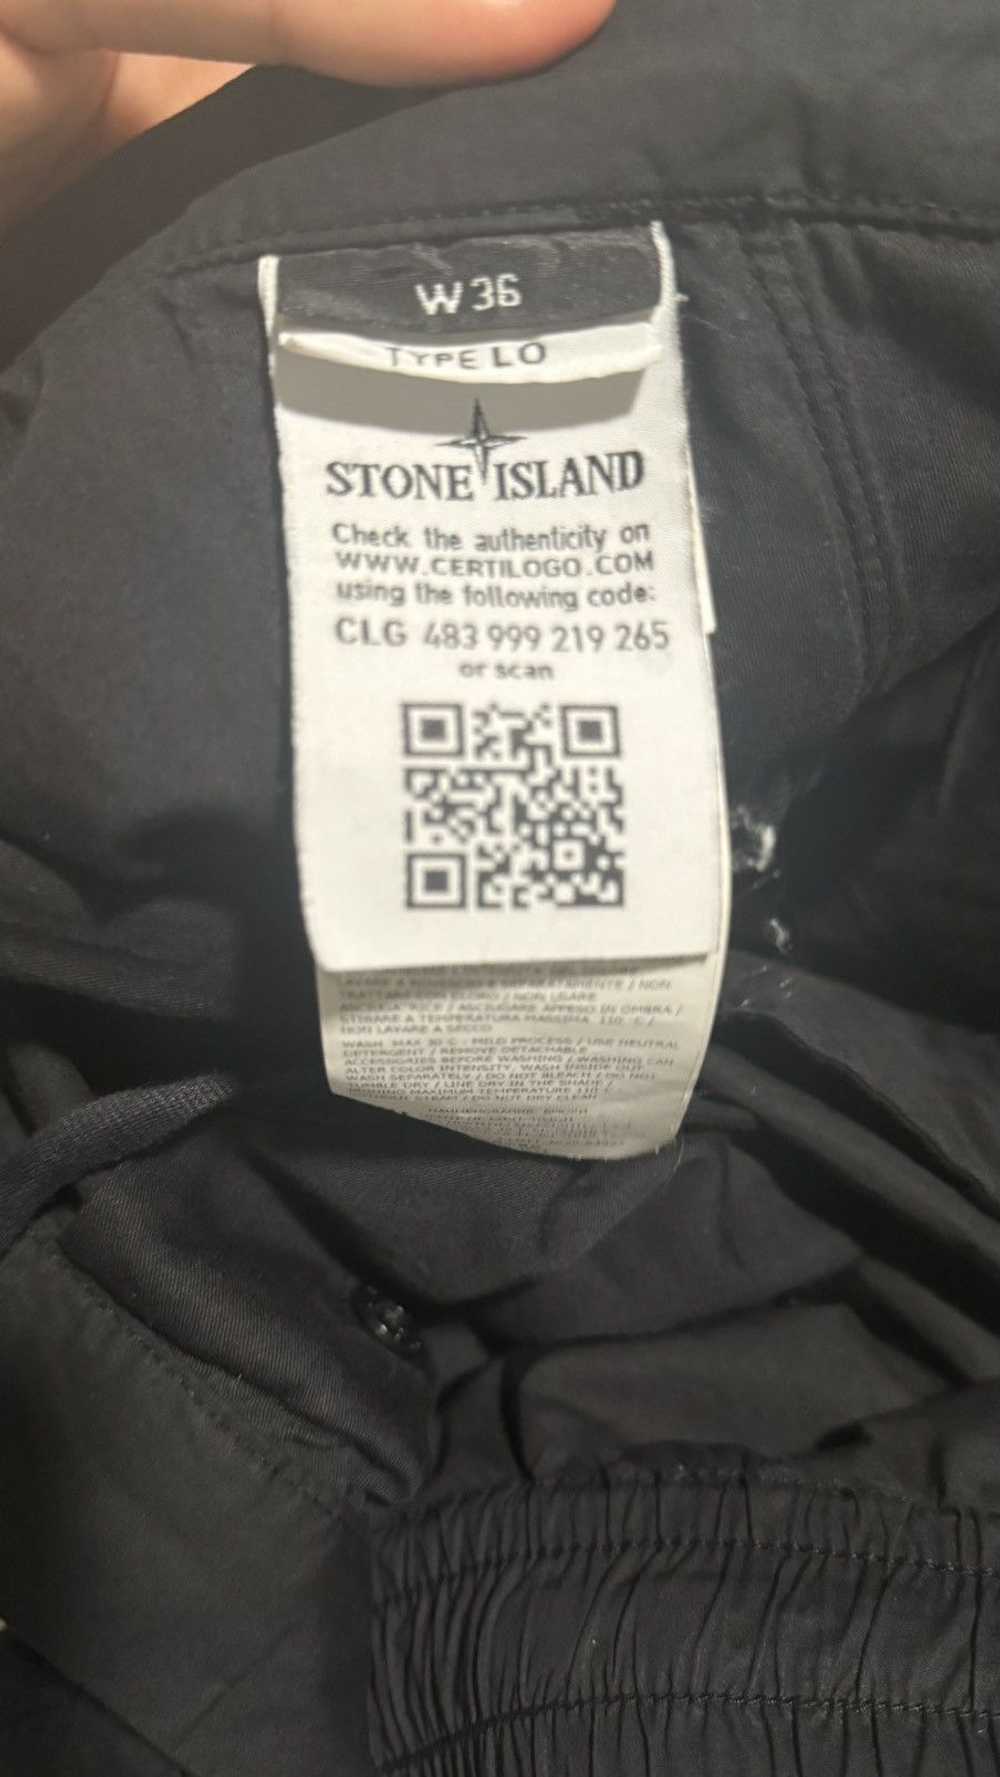 Stone Island Stone Island Nylon Cargo Pants - image 5